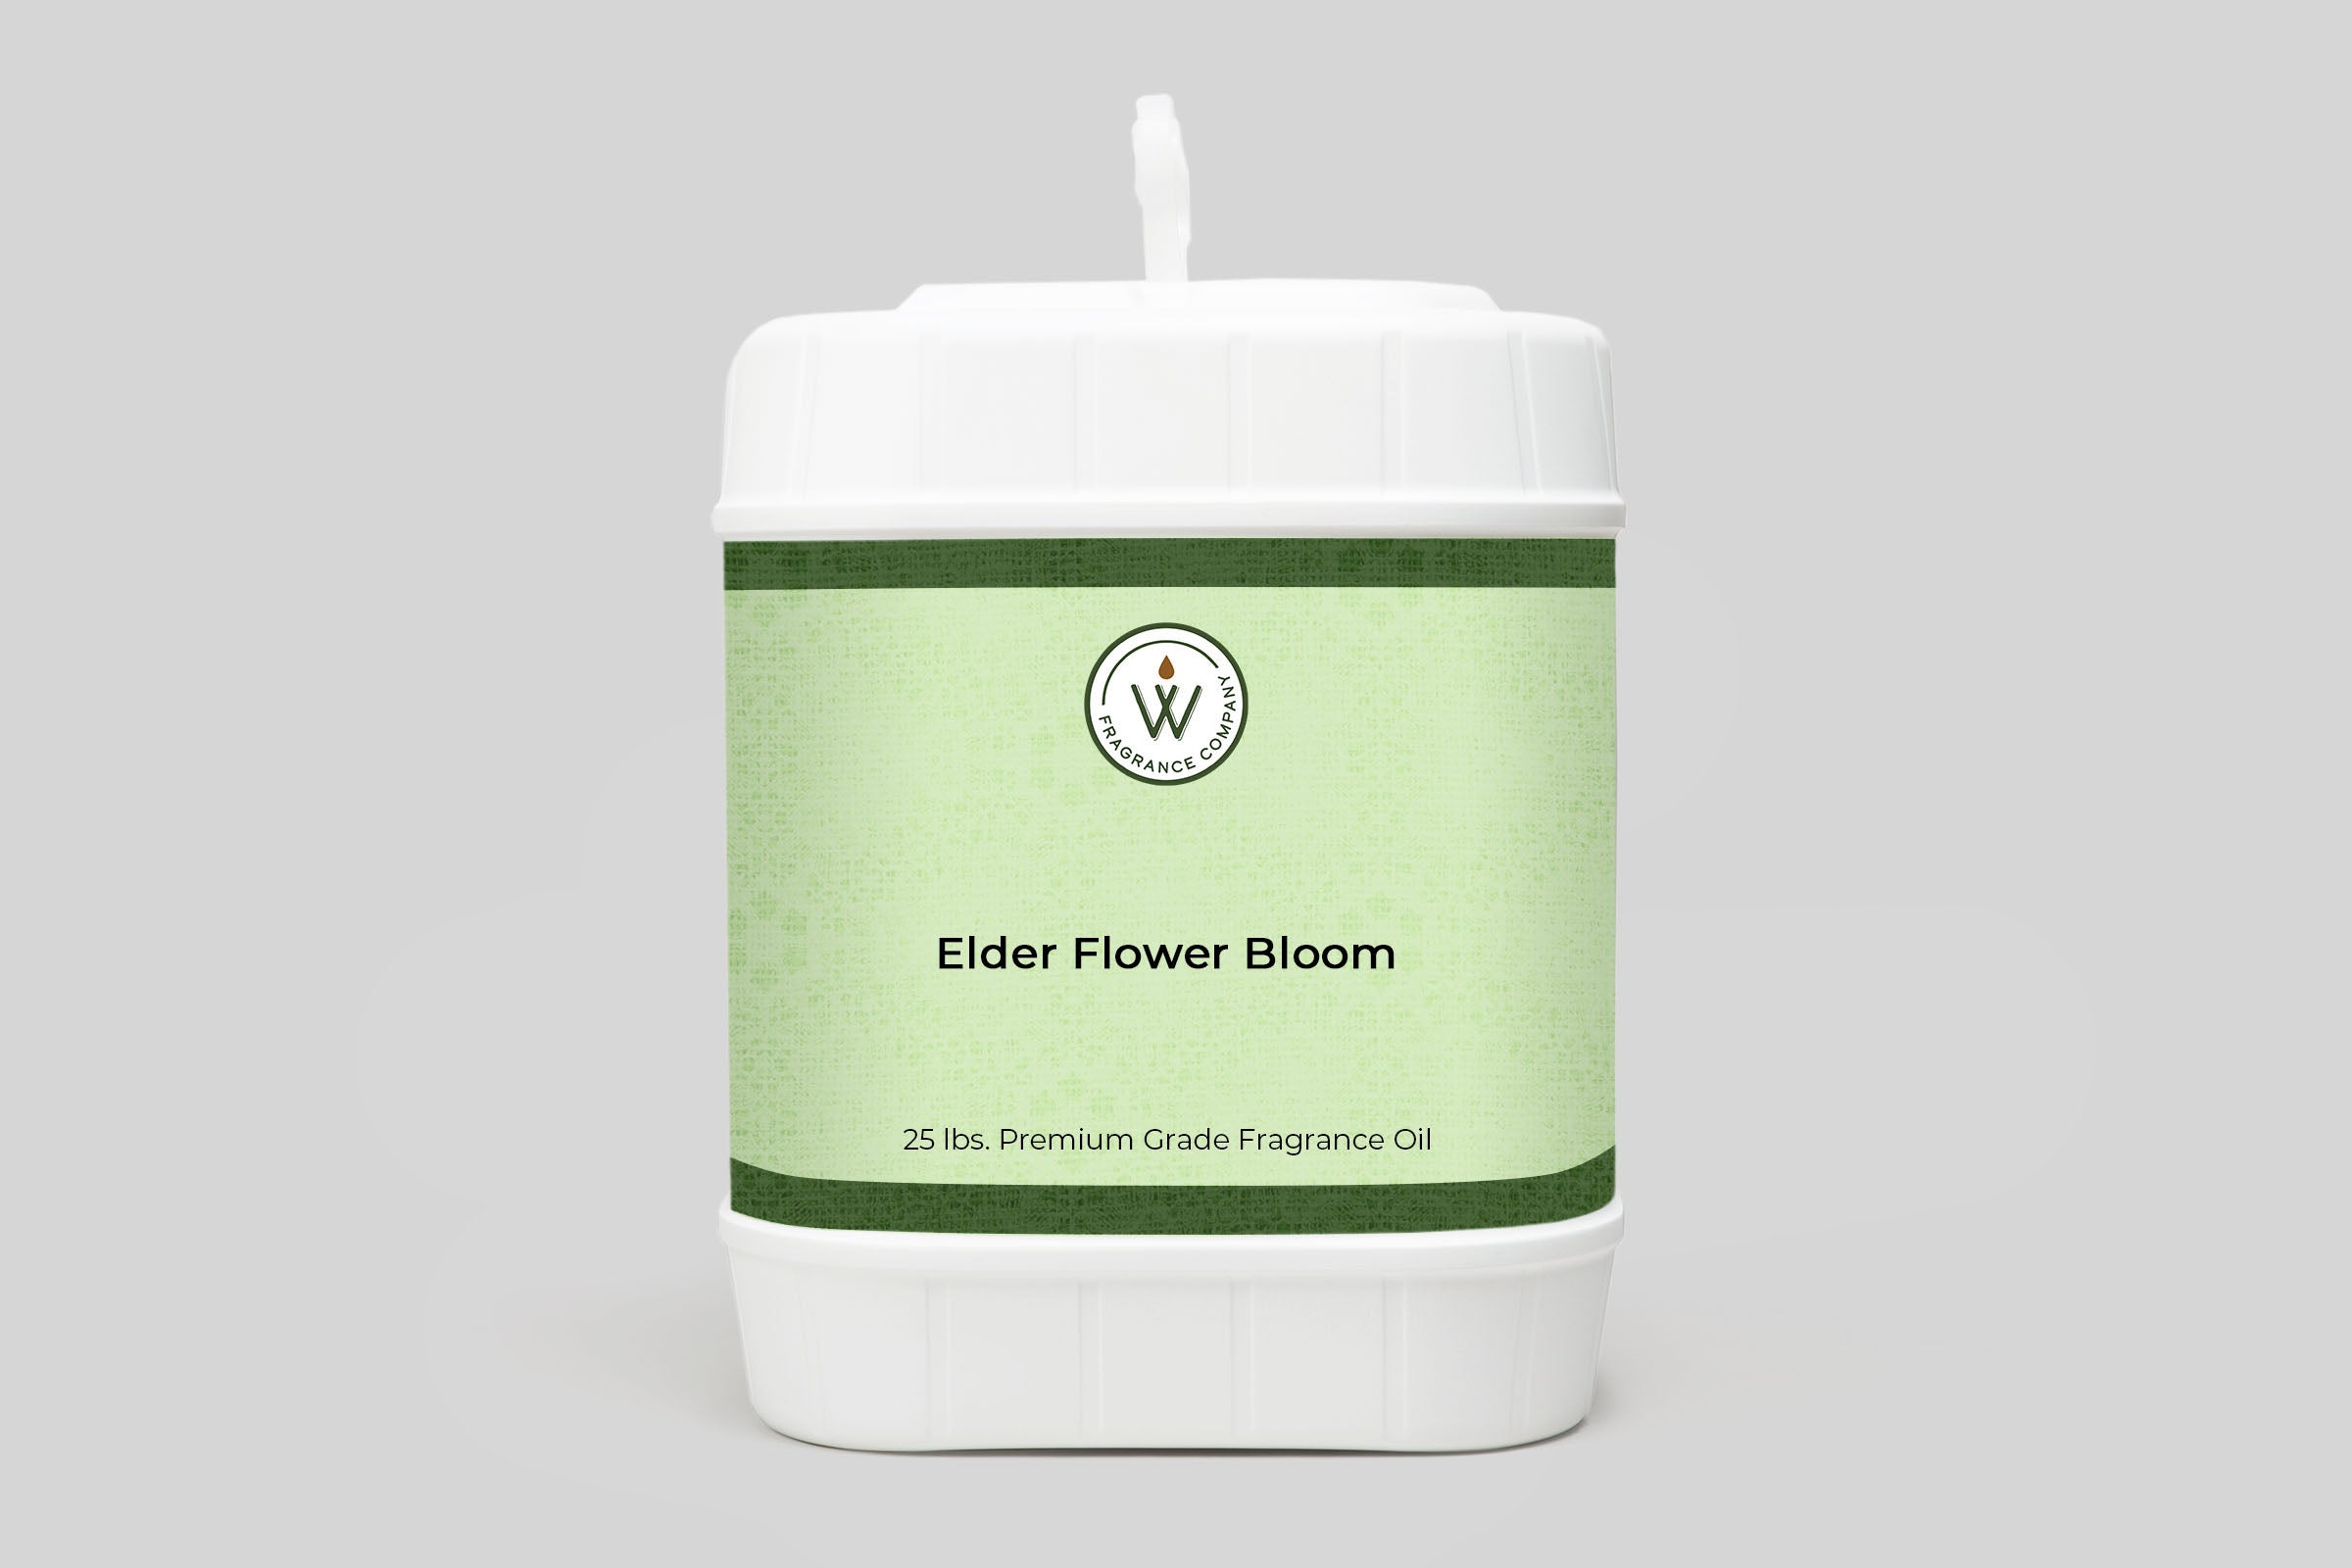 Elder Flower Bloom Fragrance Oil